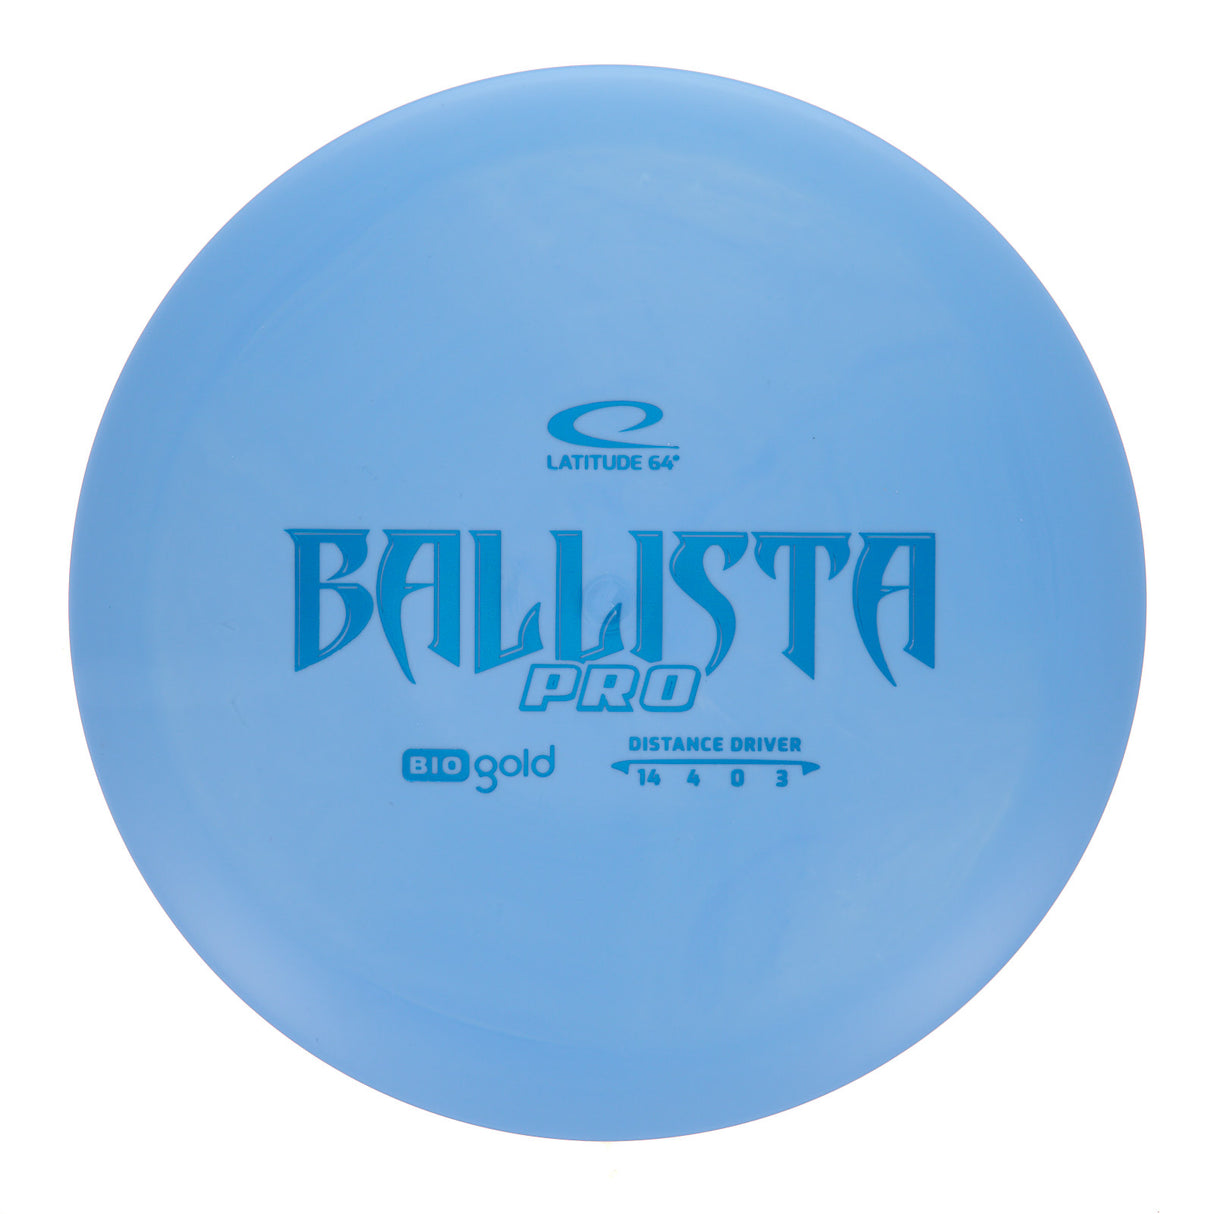 Latitude 64 Ballista Pro - Bio Gold 171g | Style 0001